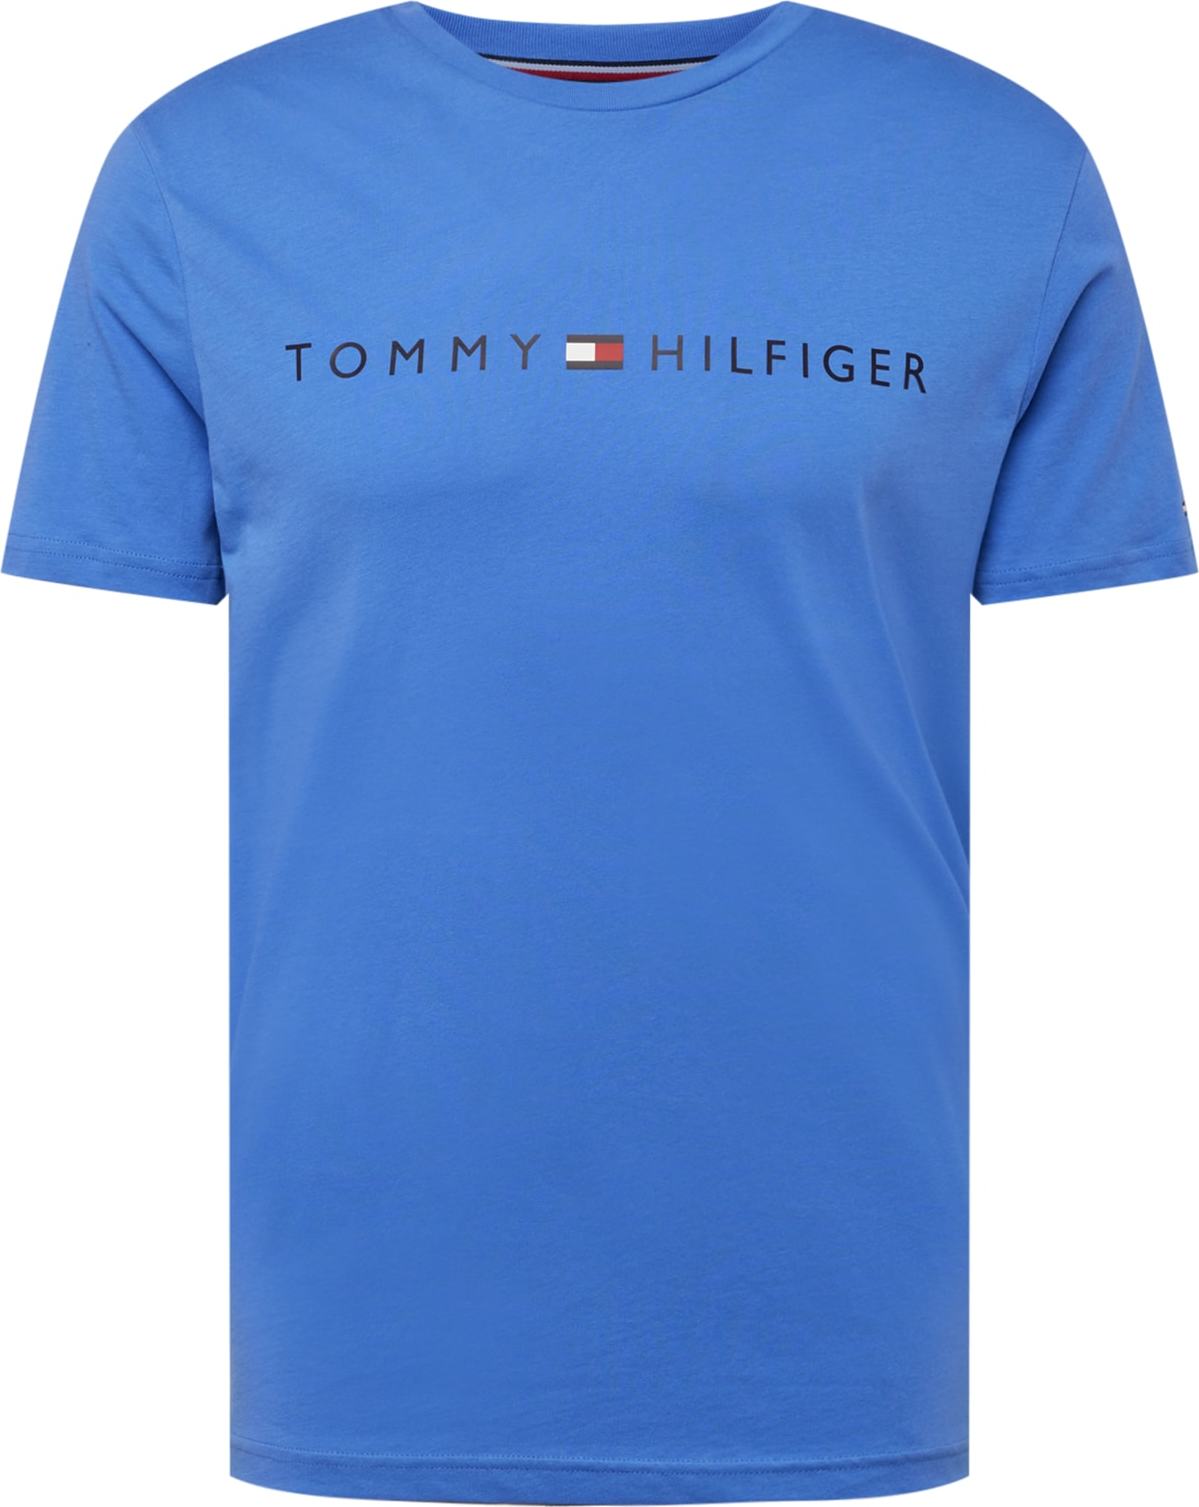 Tričko Tommy Hilfiger Underwear tyrkysová / tmavě modrá / ohnivá červená / bílá